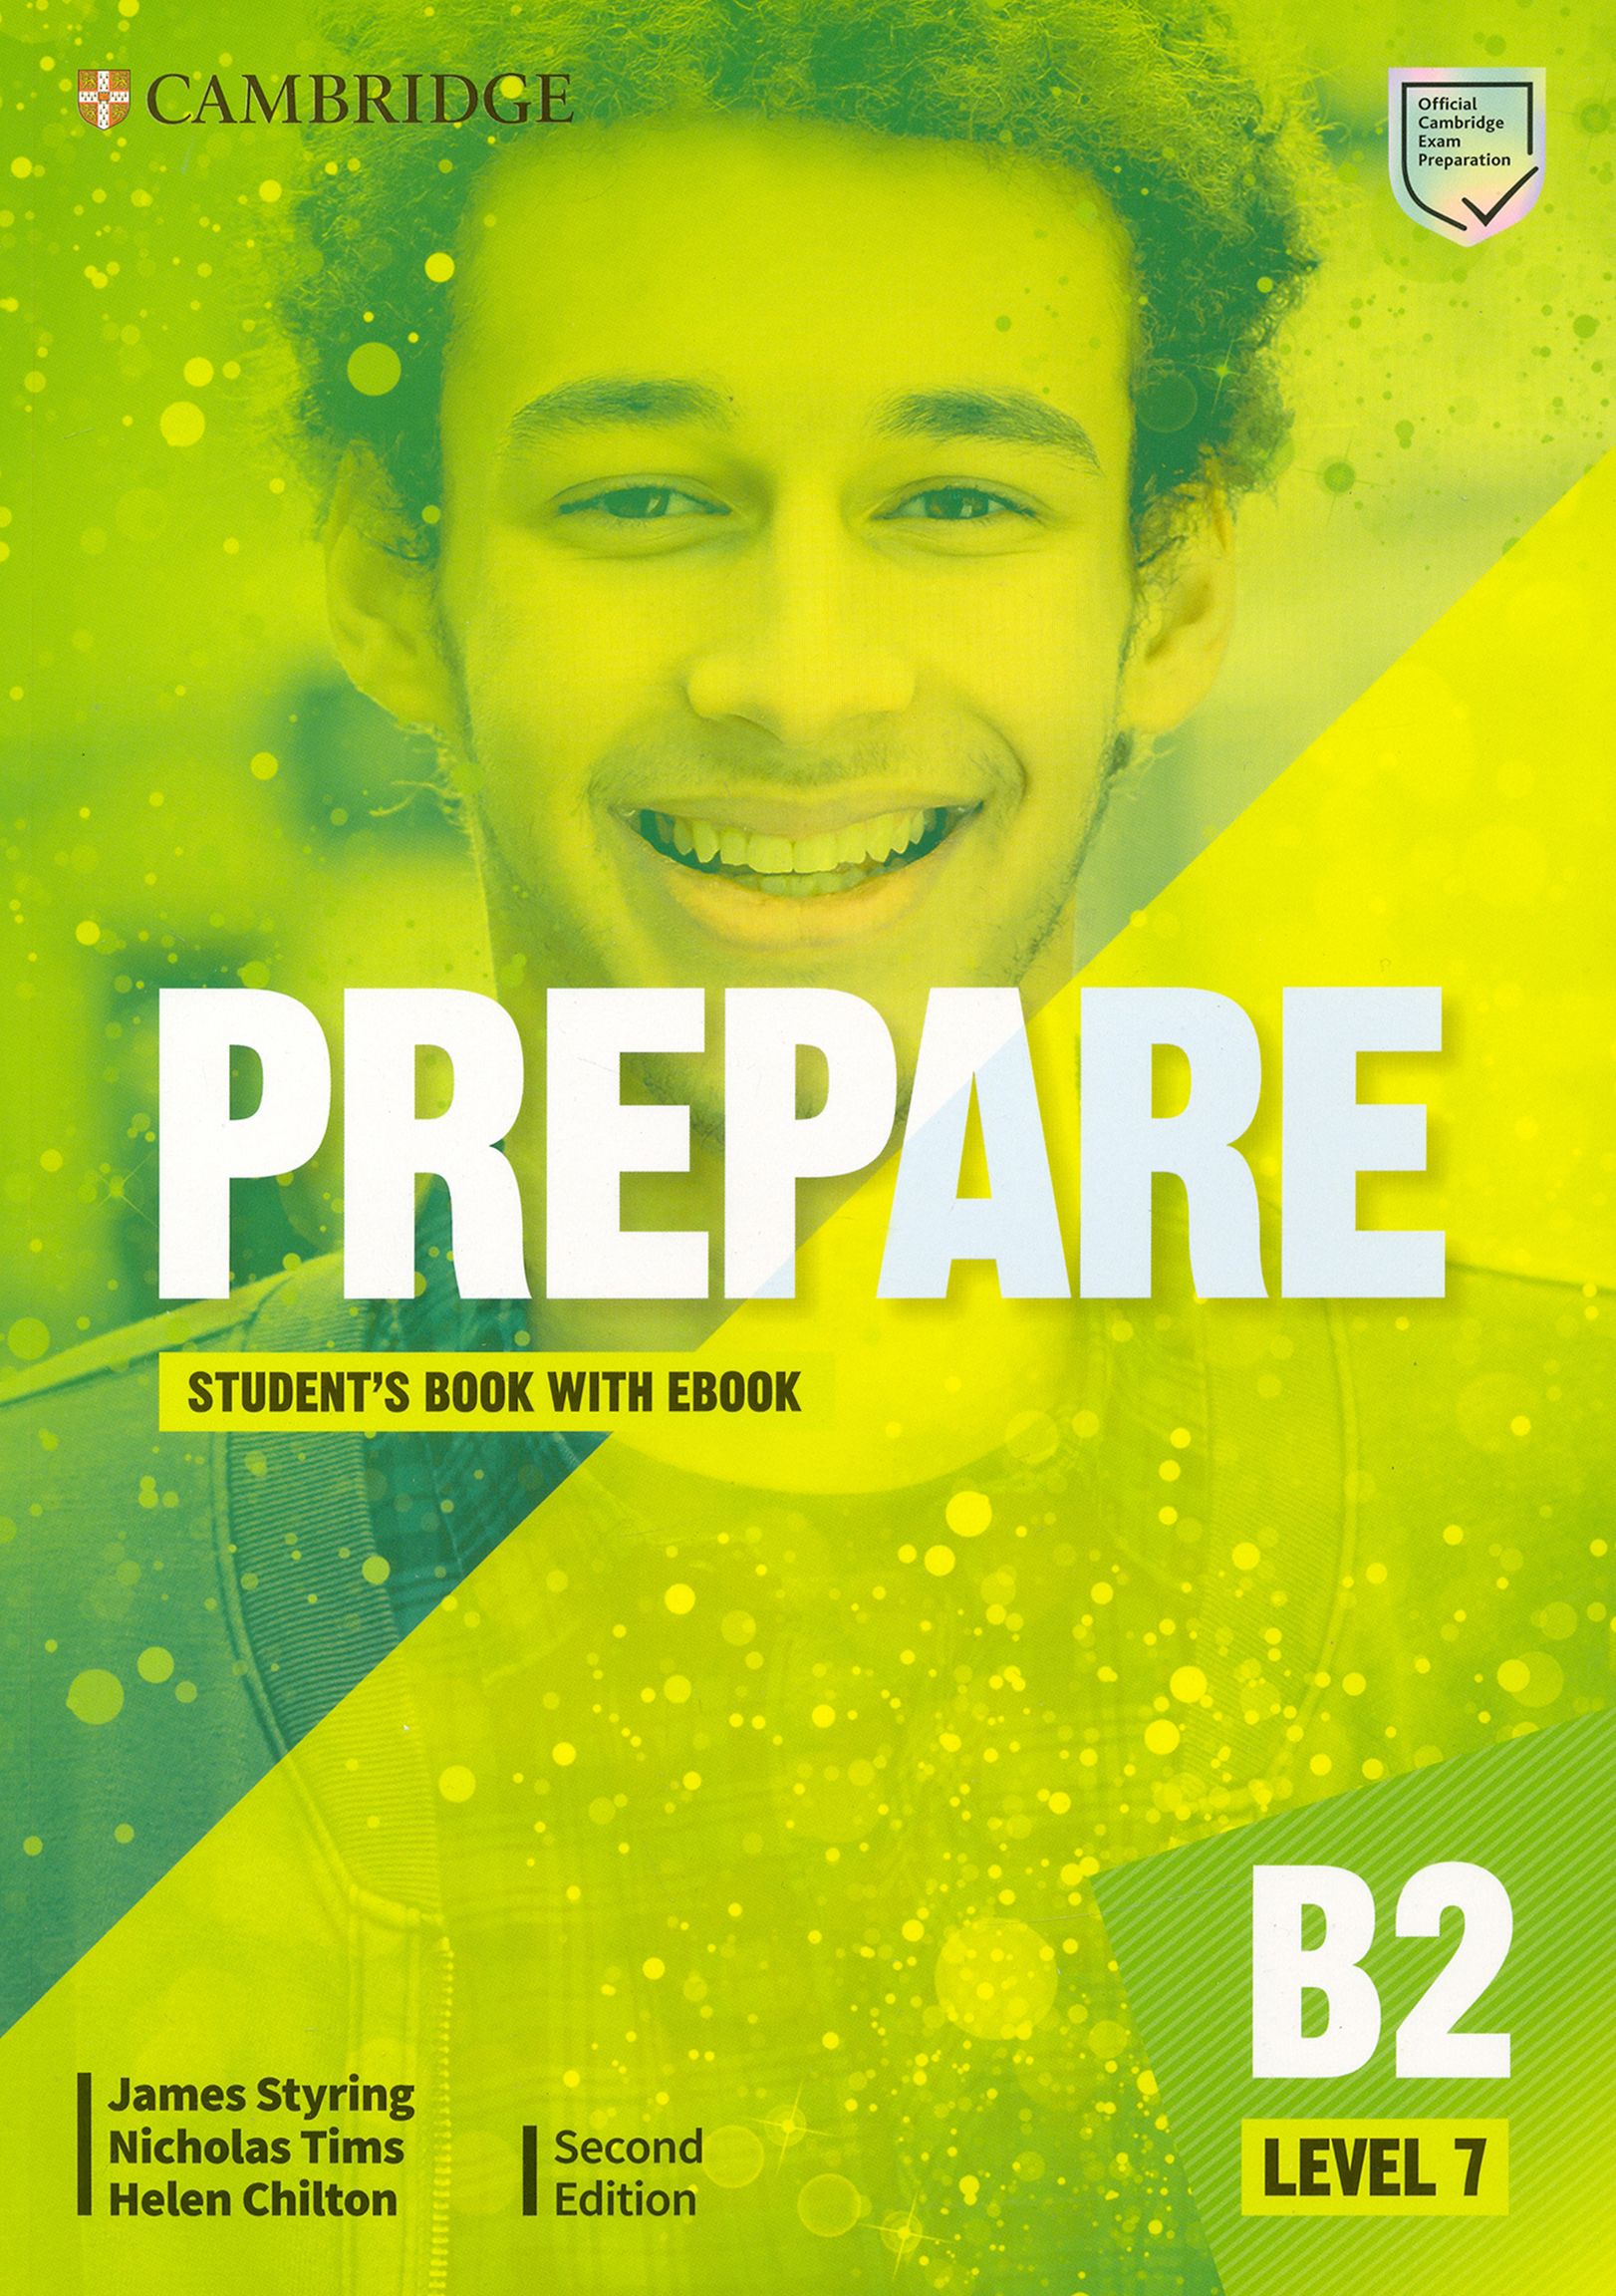 Prepare second Edition Level 7. Cambridge prepare 2nd Edition b1. Cambridge prepare 2ed Level 2 Plus. Prepare 2nd Edition Level 4.